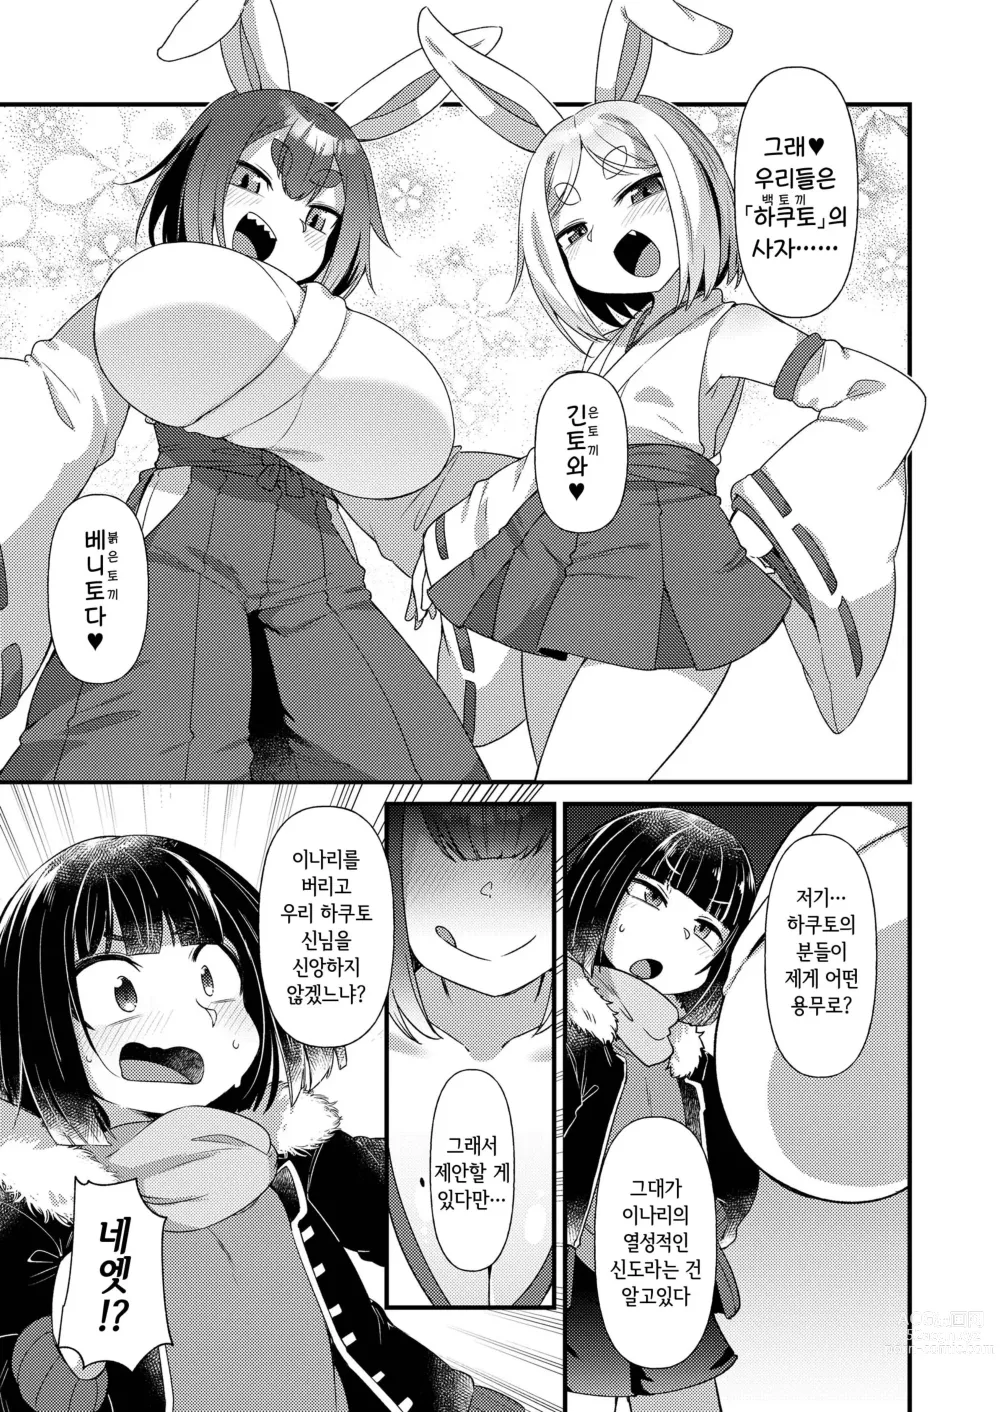 Page 3 of doujinshi 토끼의 신도가 되지 않겠는가?